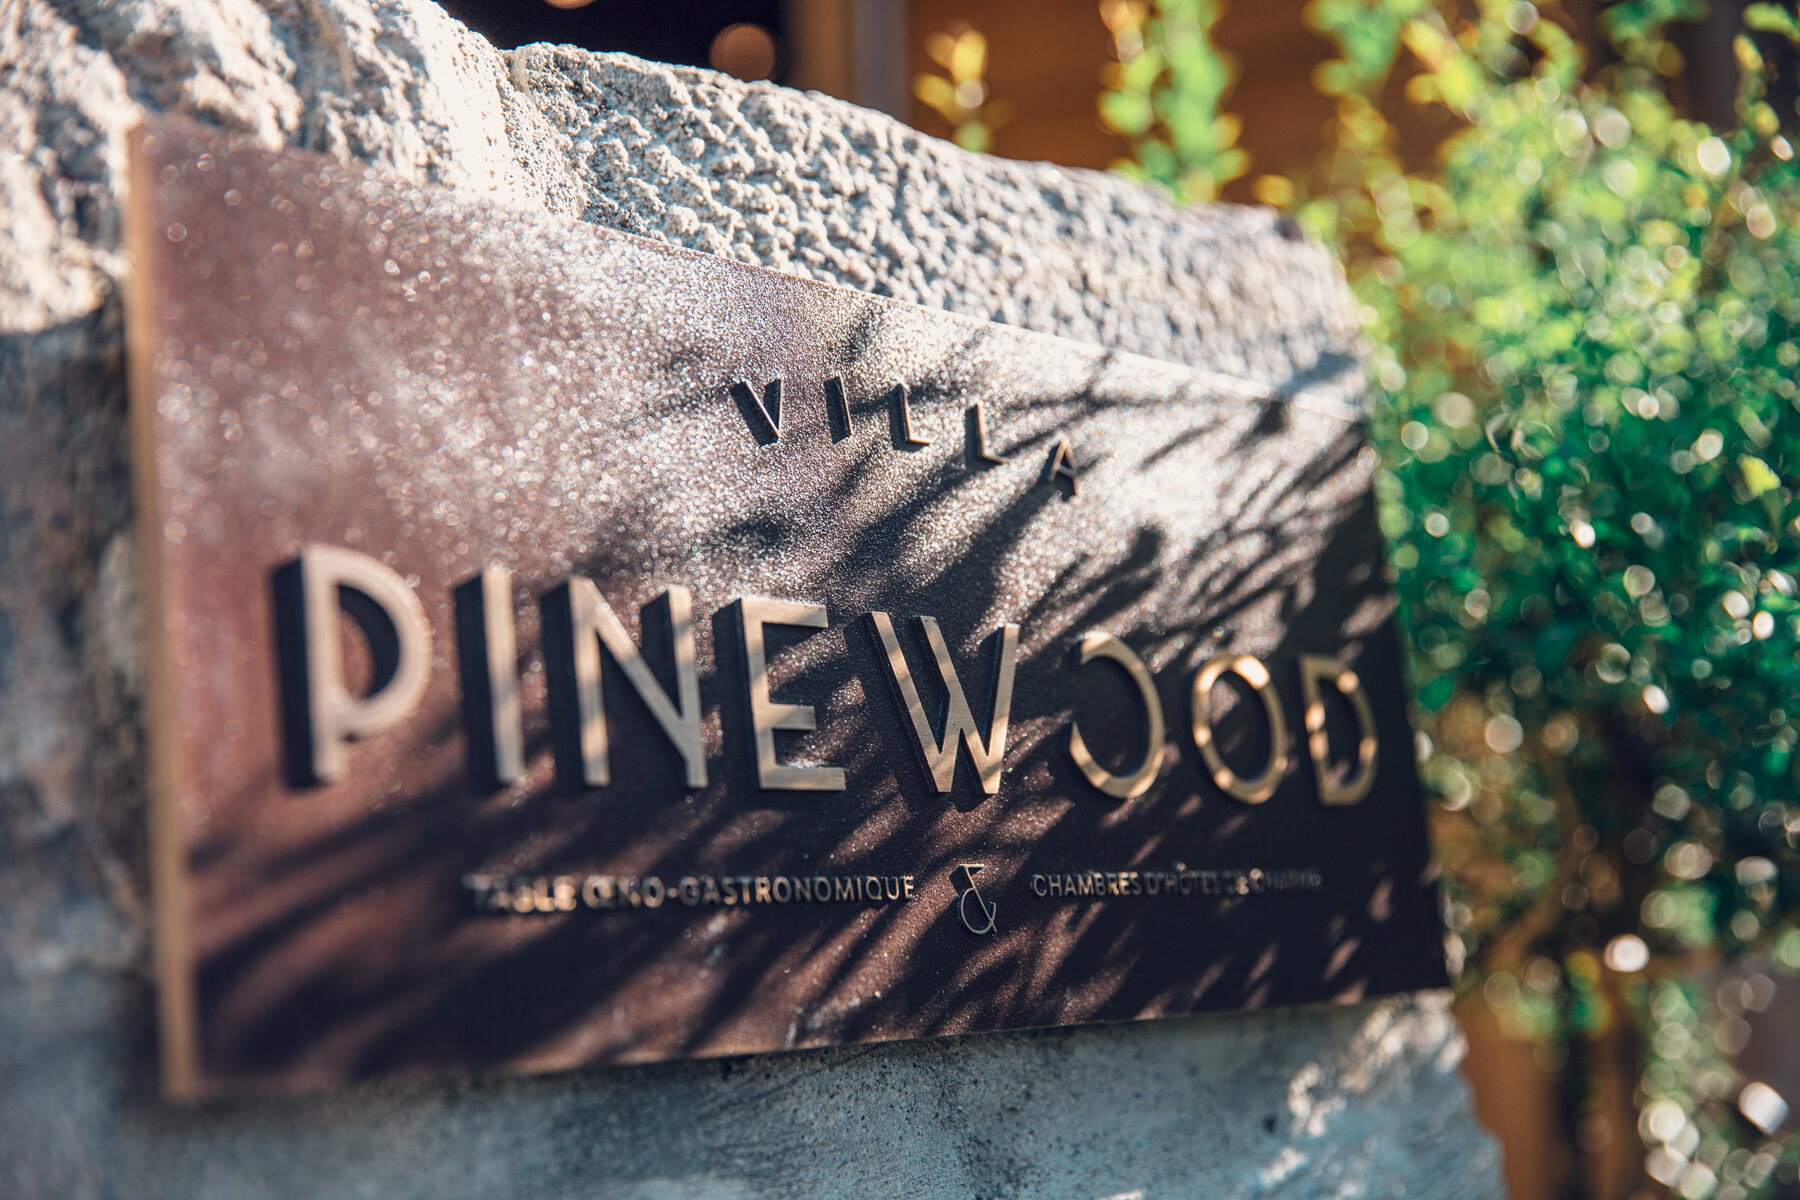 villa-pinewood-2020-08-66.jpg